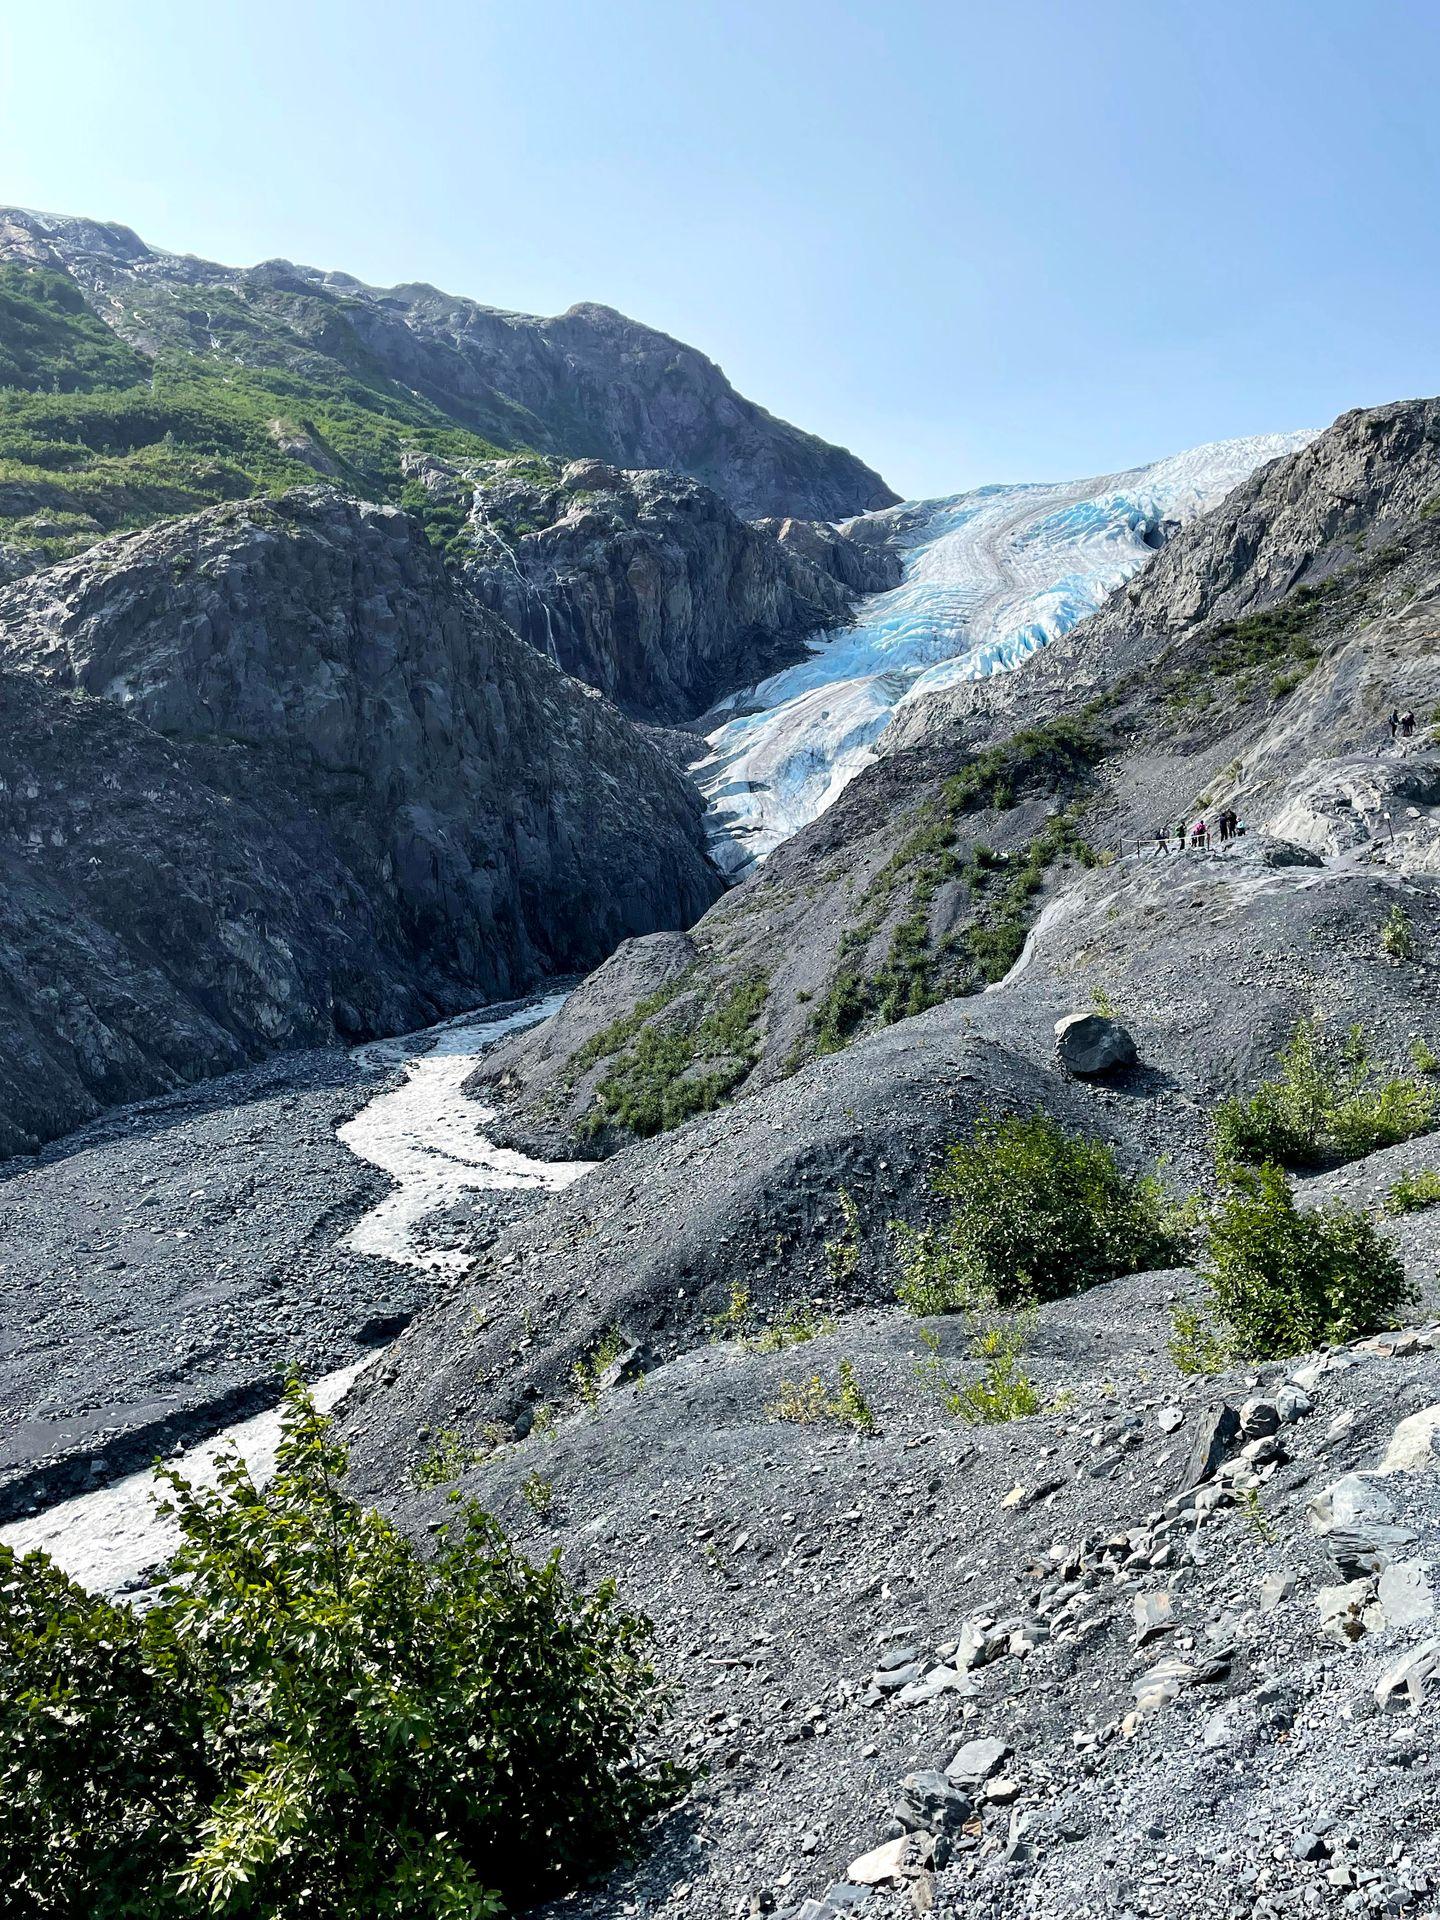 A view of Exit Glacier in Kenai Fjords.